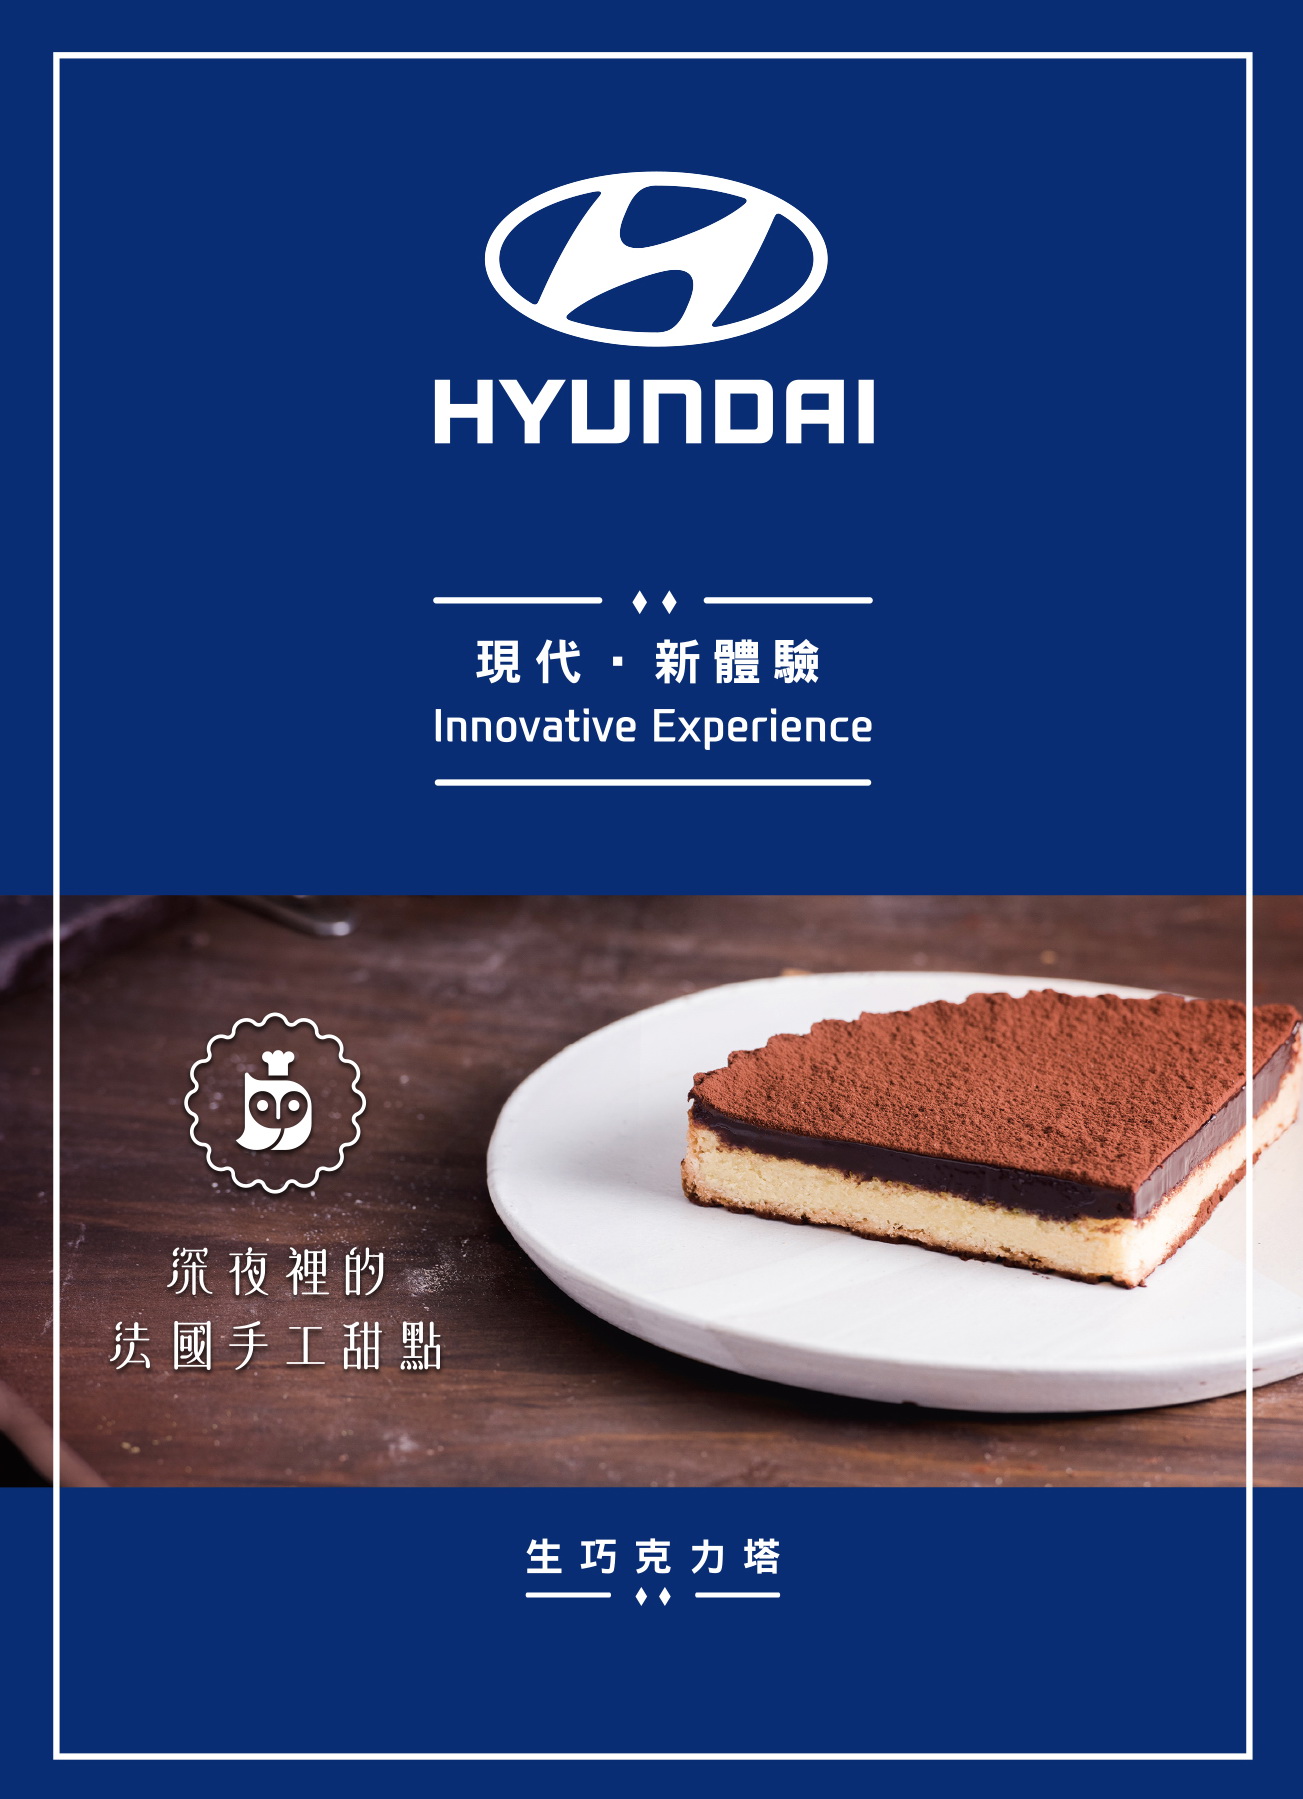 HYUNDAI X 深夜裡的手工法國甜點.jpg